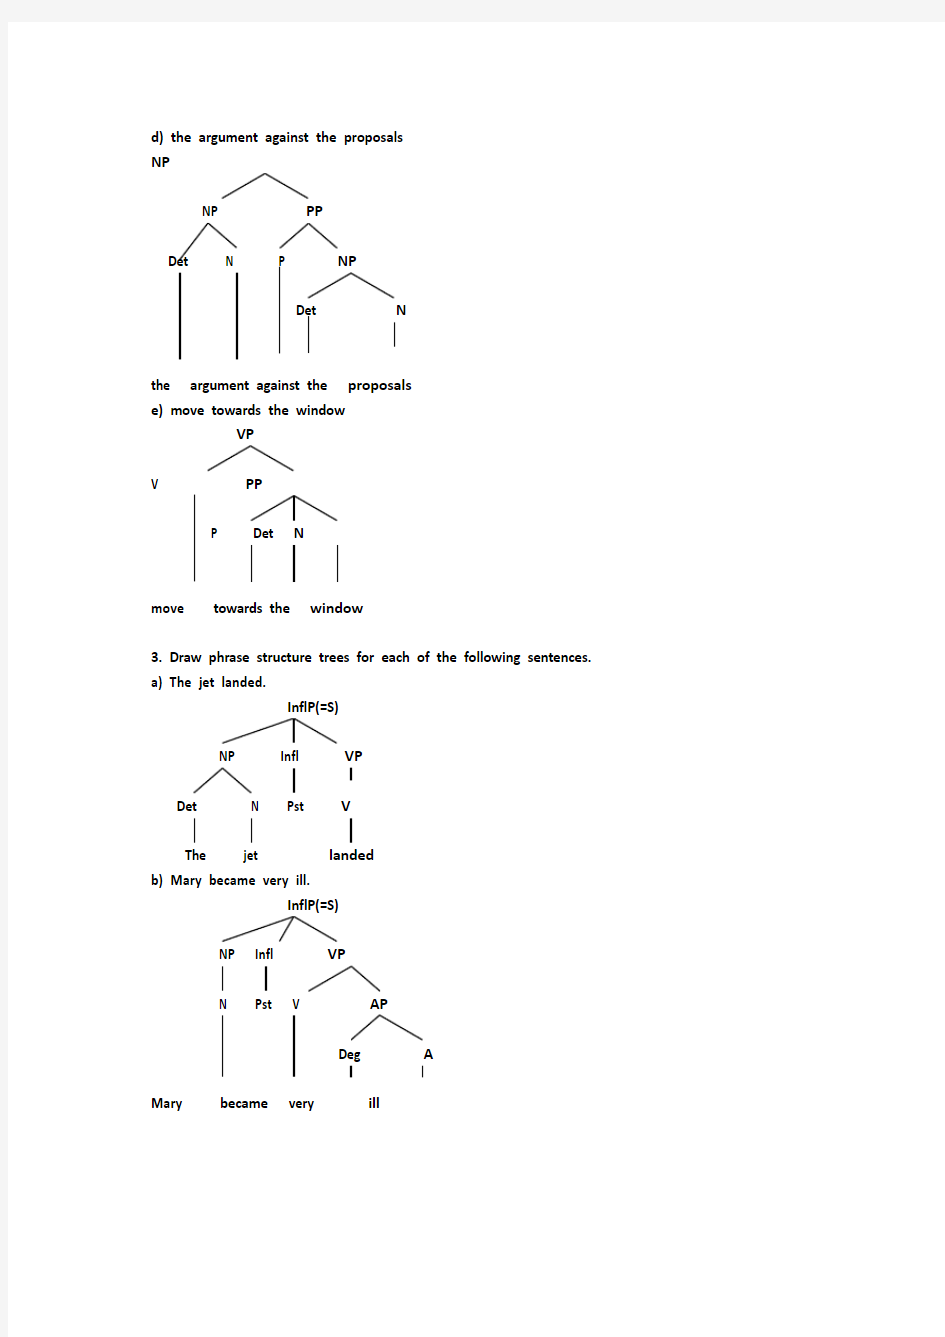 英语语言学树型图